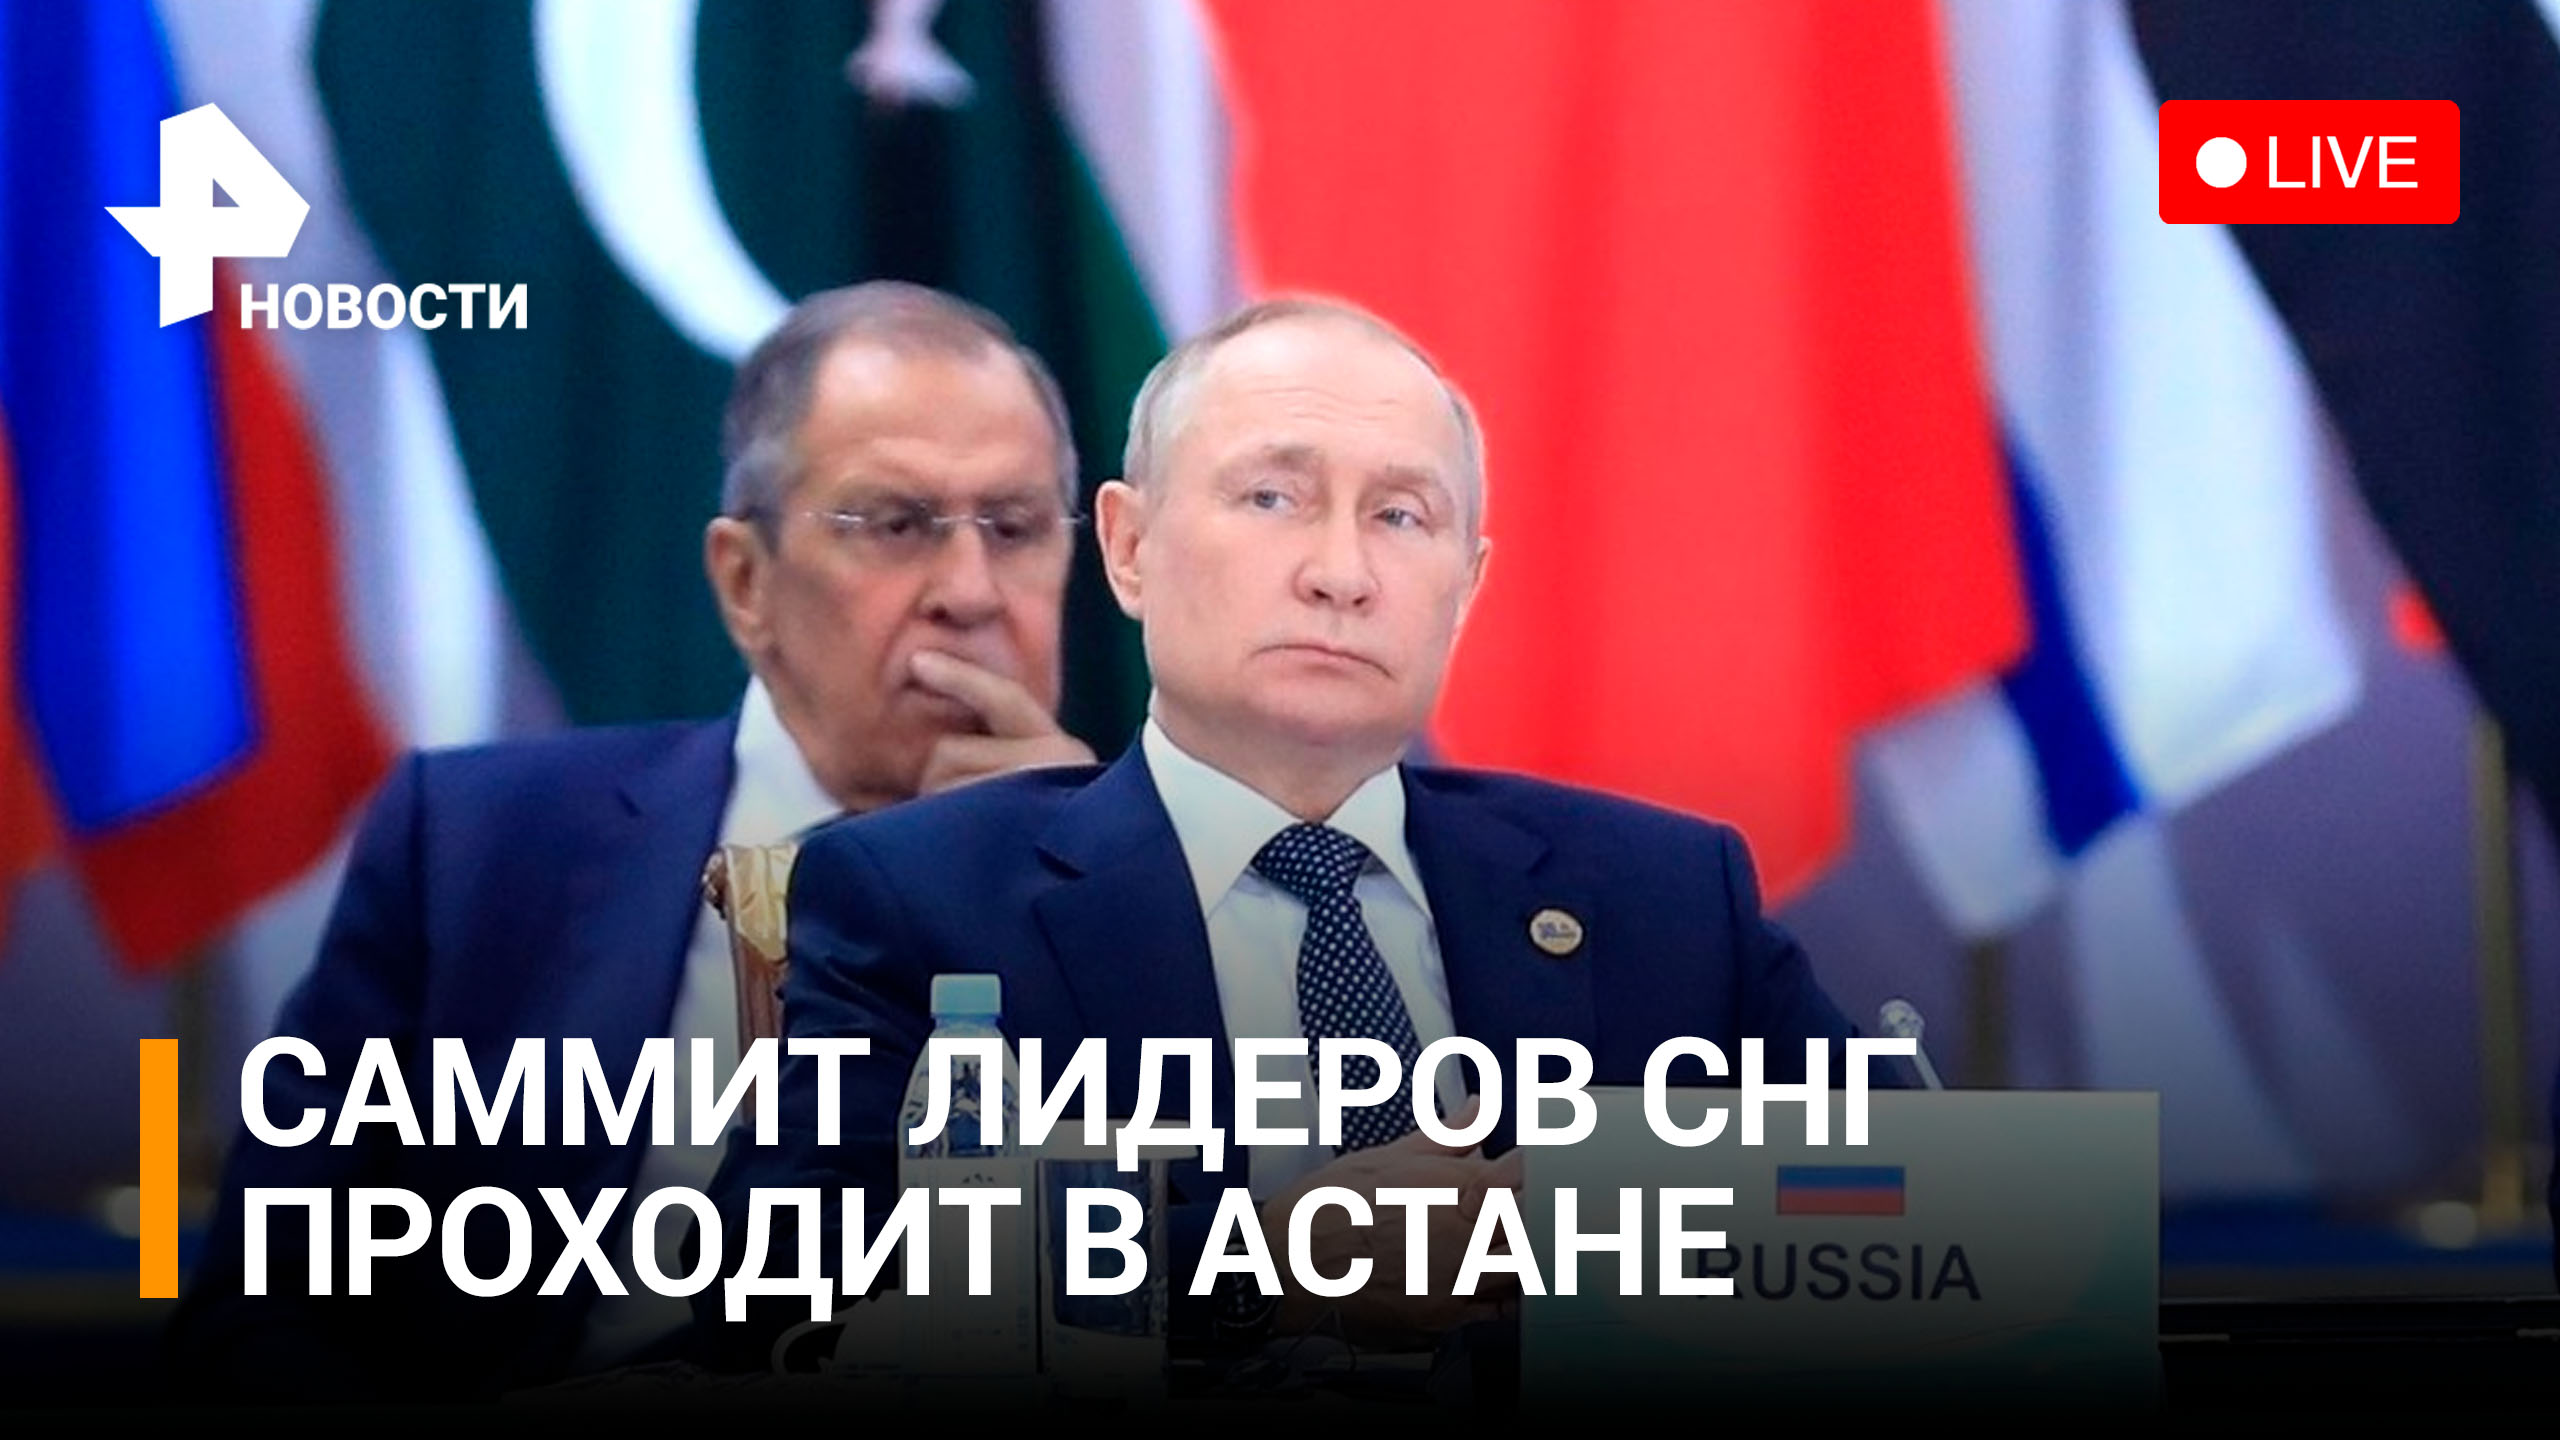 Владимир Путин участвует в саммите лидеров СНГ в Казахстане / РЕН Новости